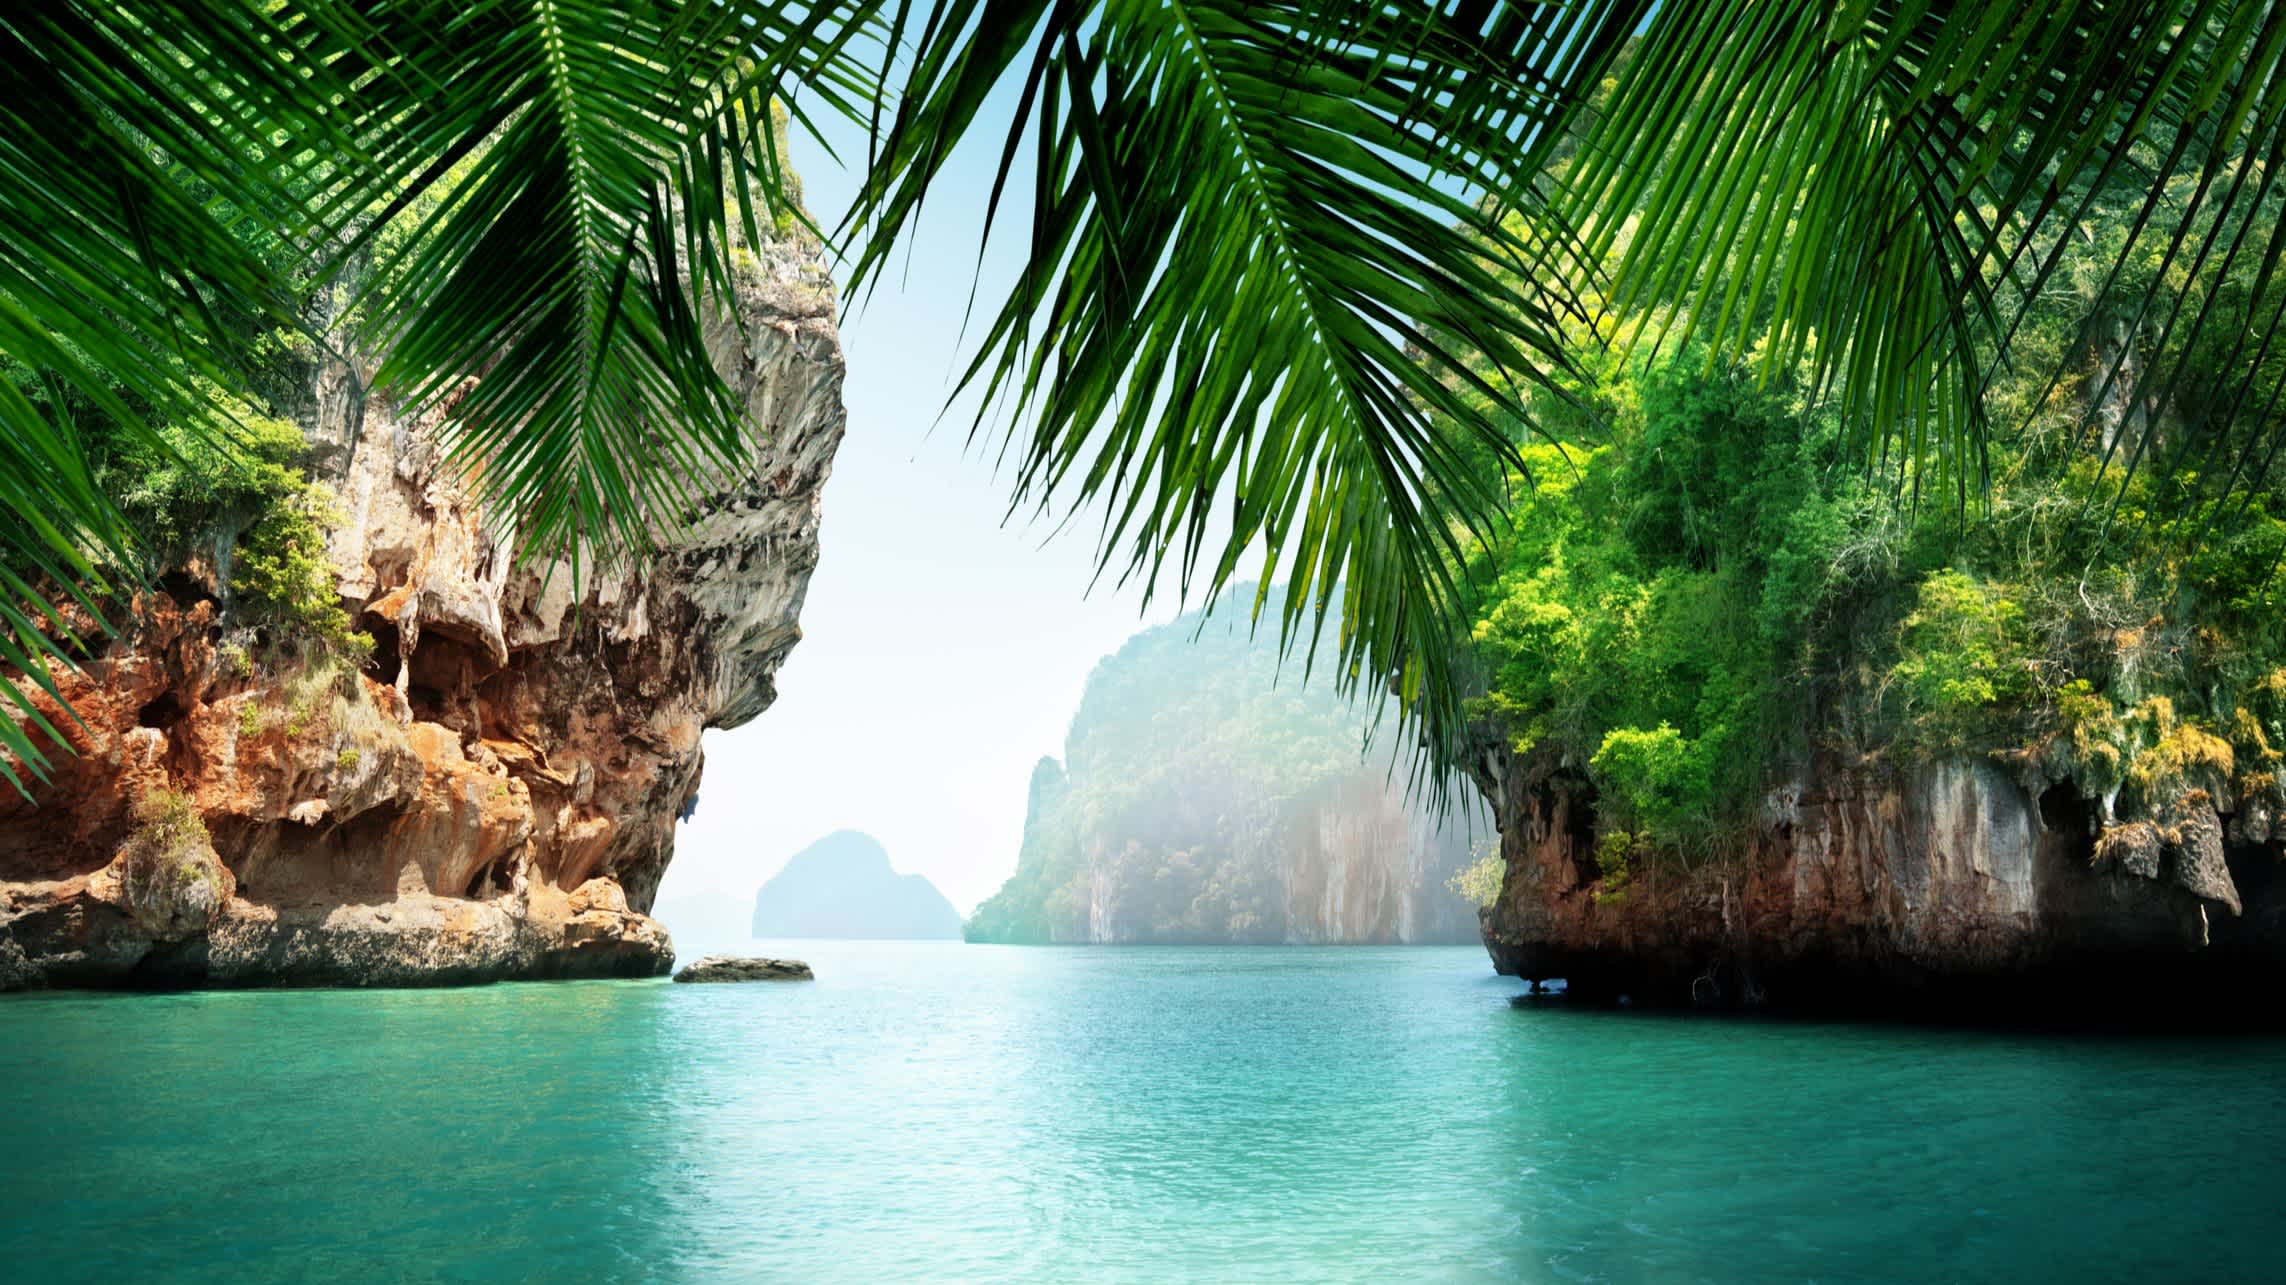 Feuilles de palmiers devant le paysage d'une eau turquoise et de rochers, en Thaïlande